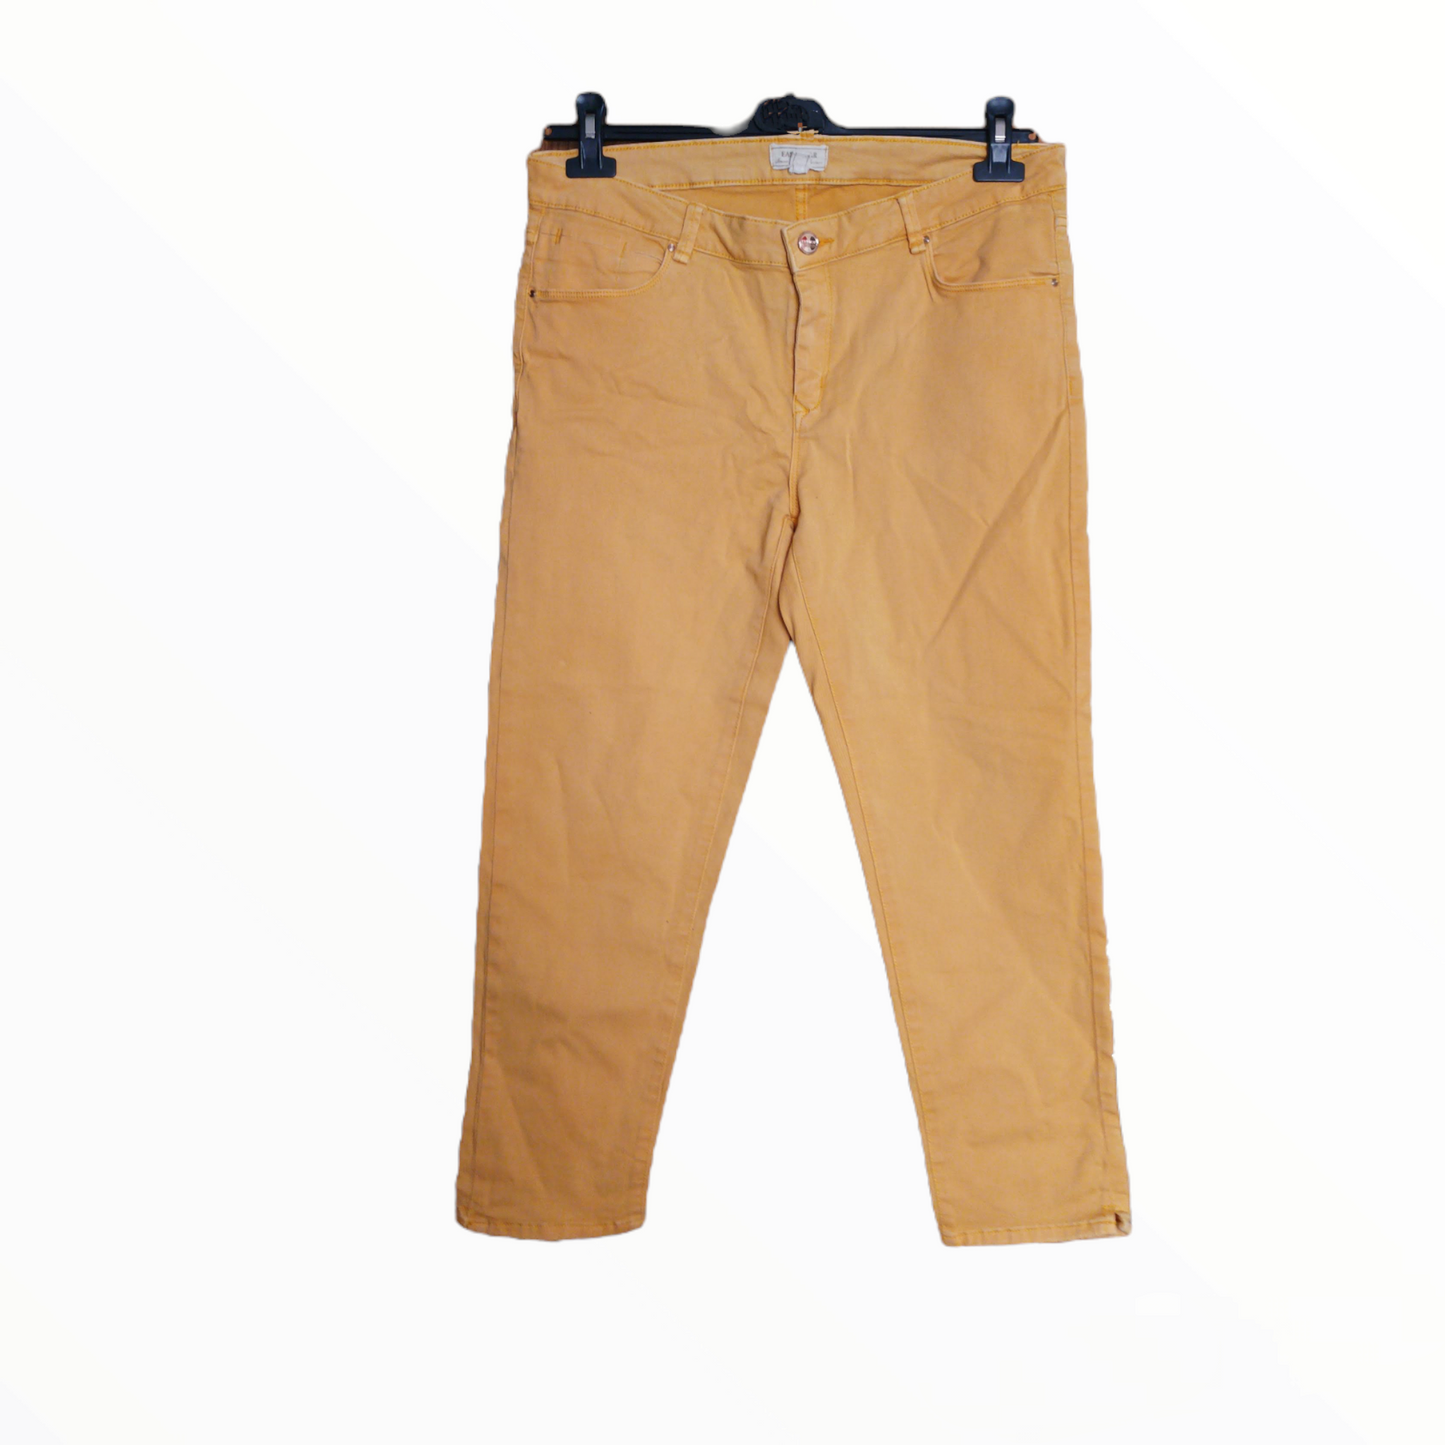 Pantalón Mujer -Marca Easy - Talla 44 – La Jirafa de Algodón